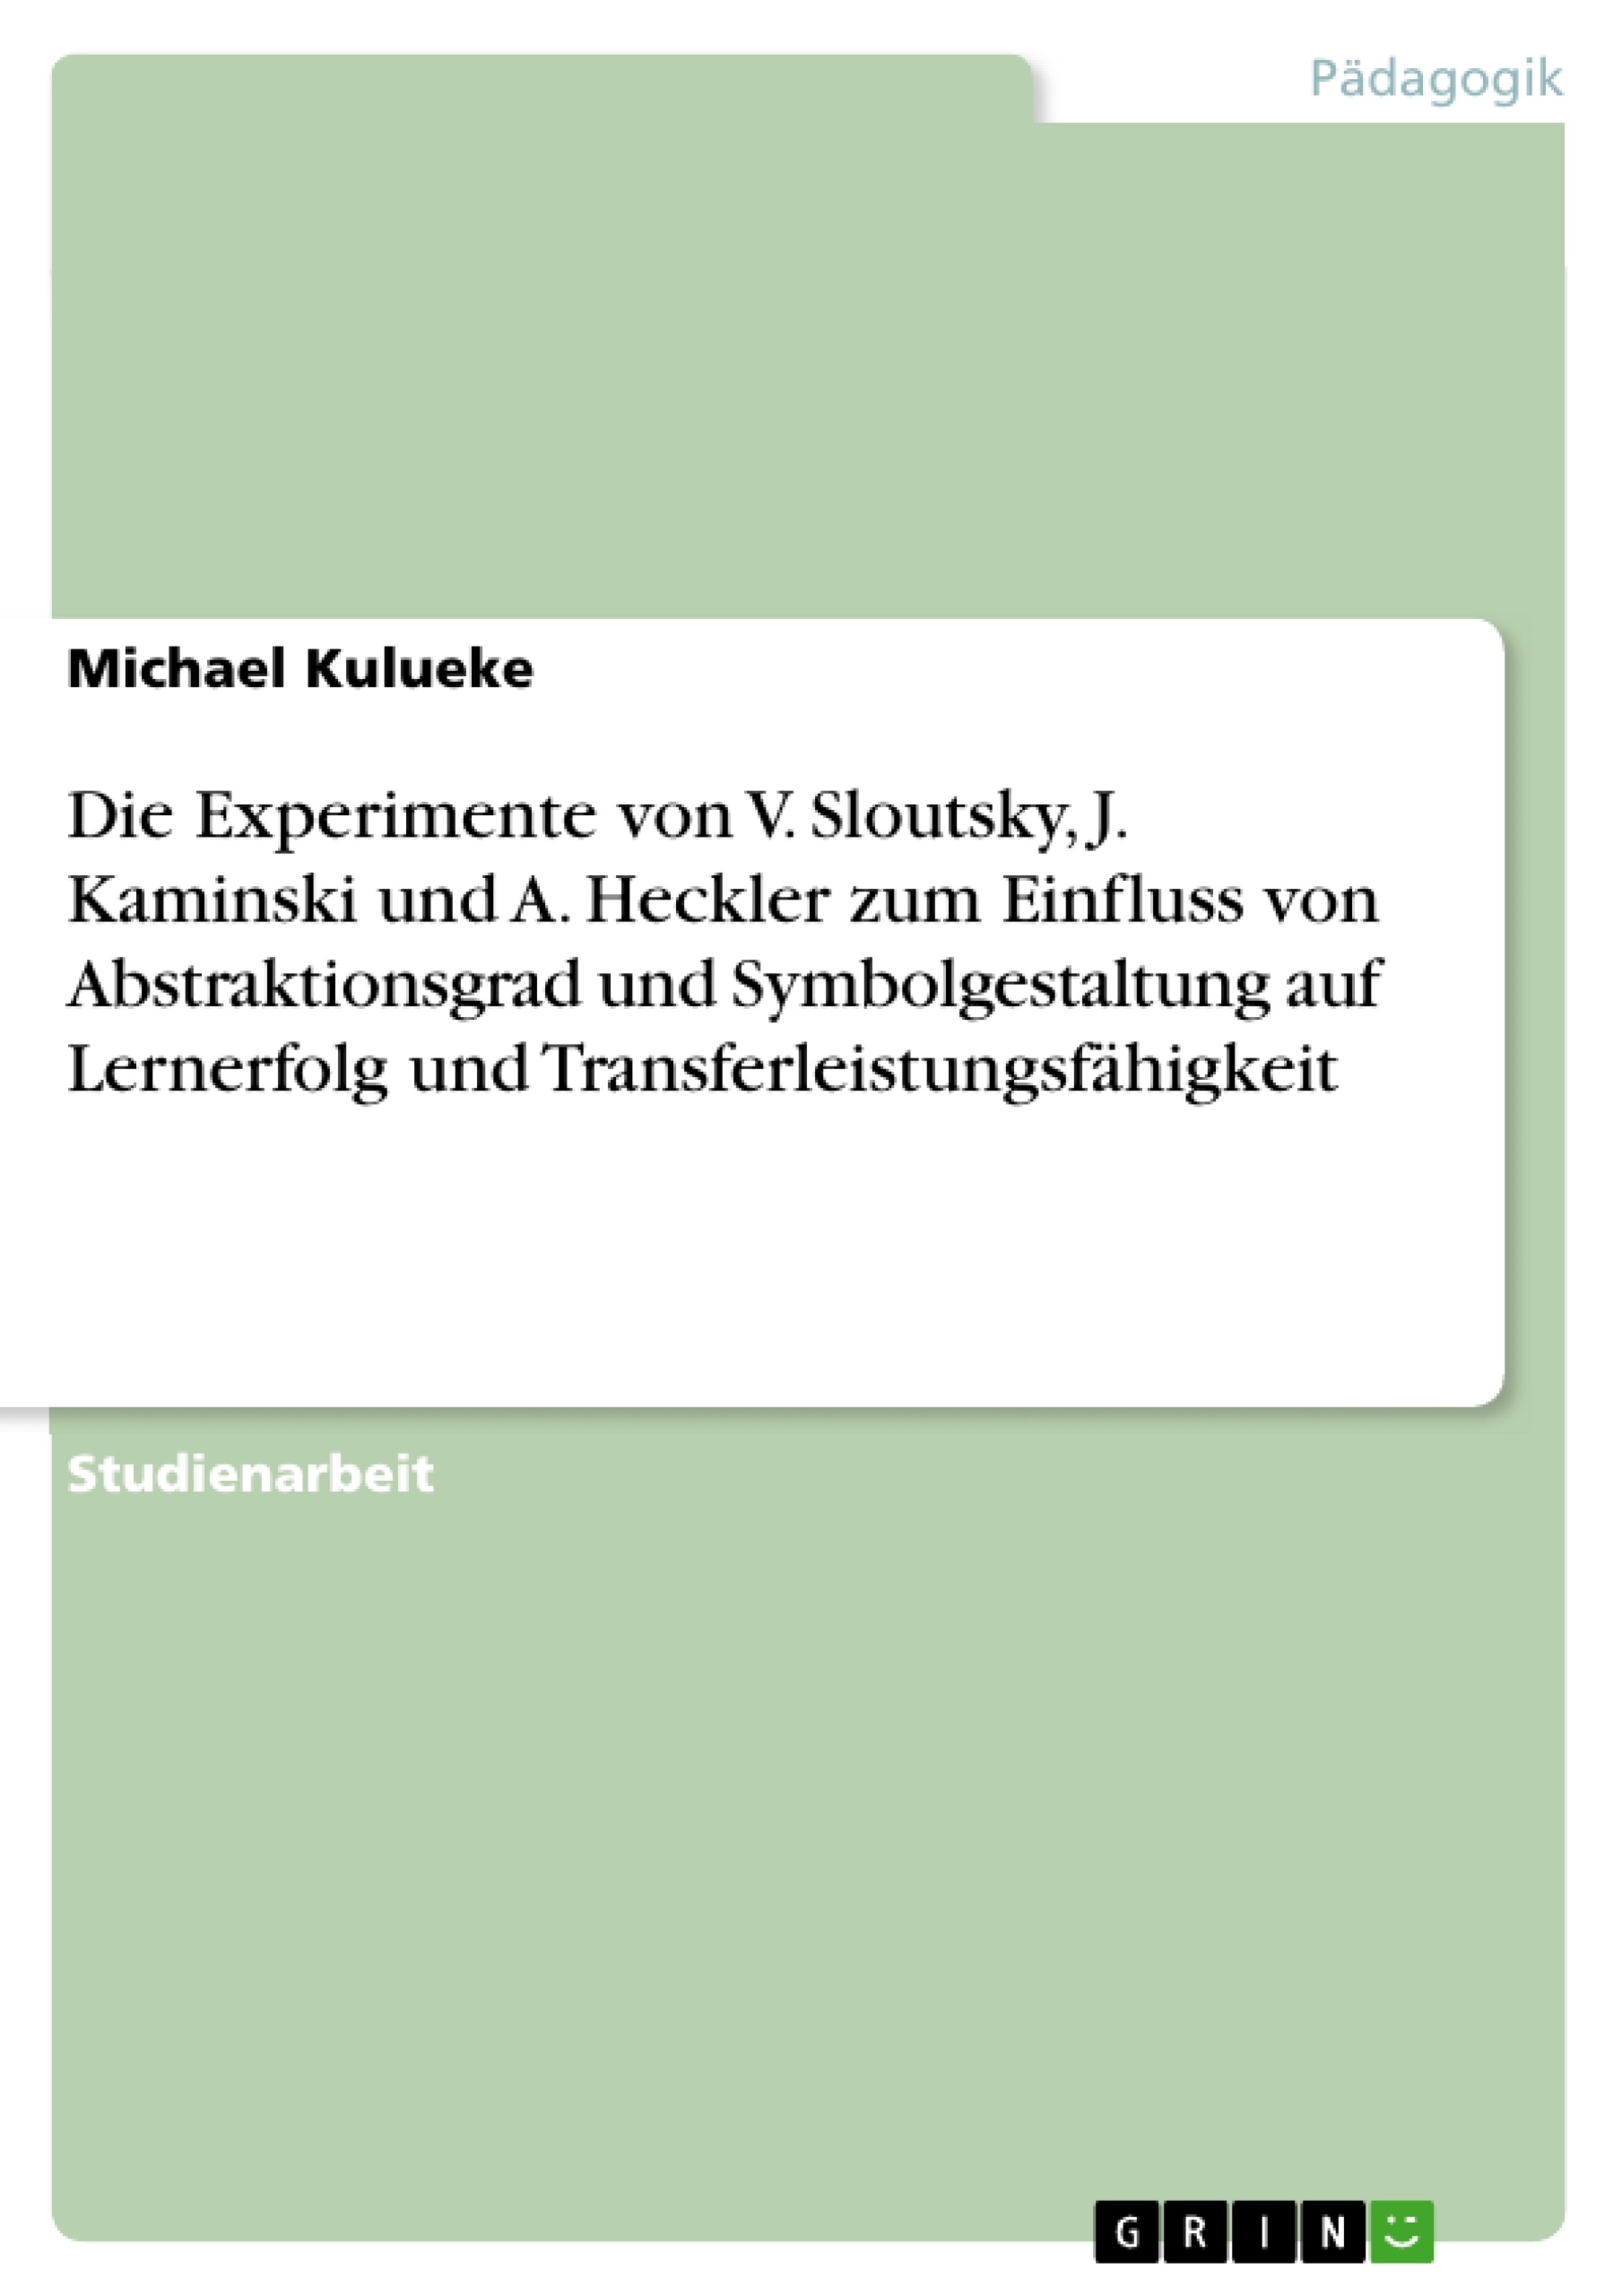 Titel: Die Experimente von V. Sloutsky, J. Kaminski und A. Heckler zum Einfluss von Abstraktionsgrad und Symbolgestaltung auf Lernerfolg und Transferleistungsfähigkeit  